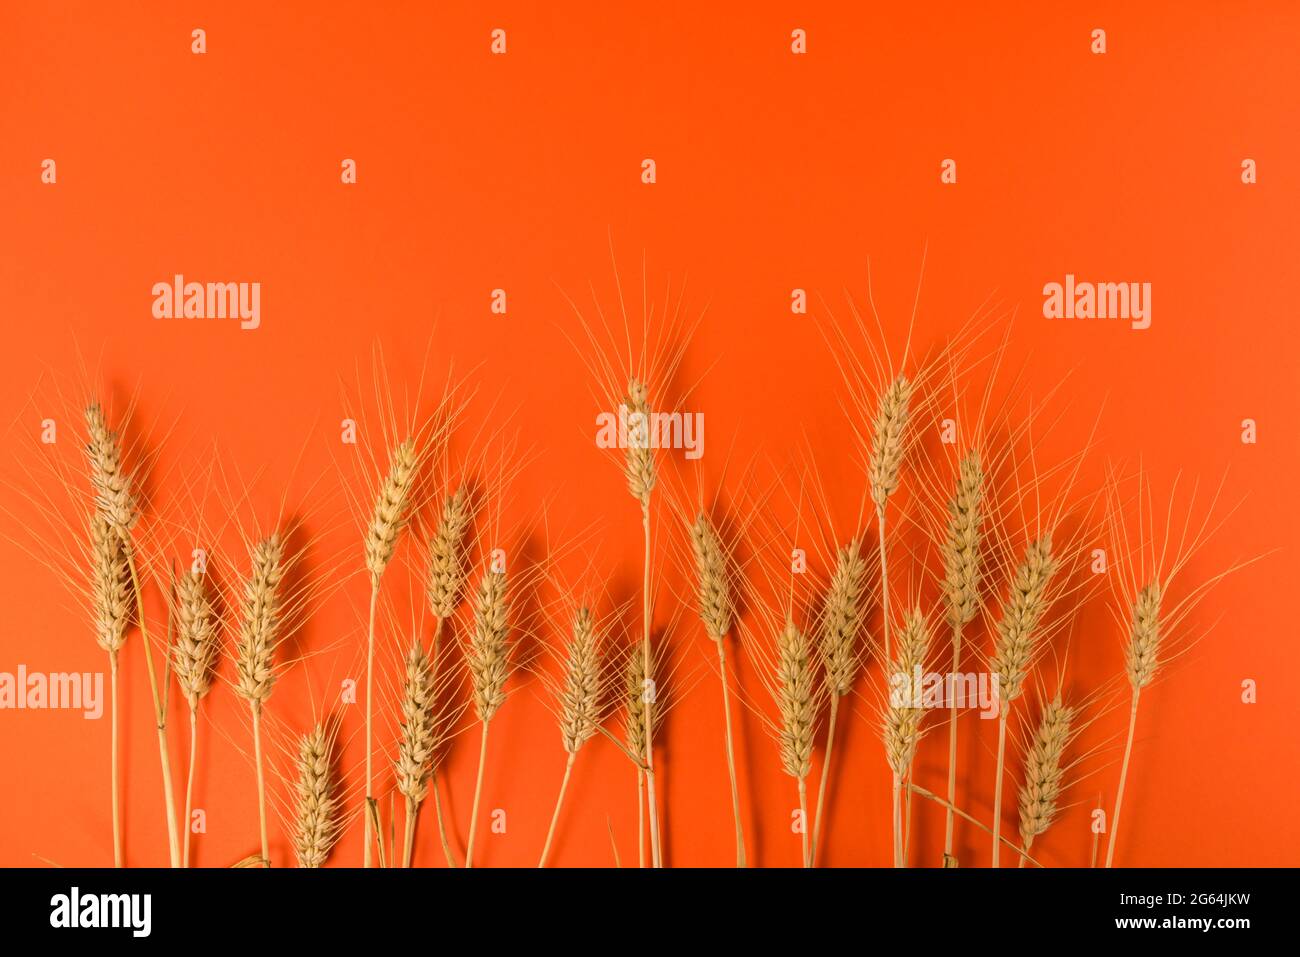 Épis de blé sur fond orange, motif graphique pour illustrations, étiquette, accueil. Copier l'espace Banque D'Images